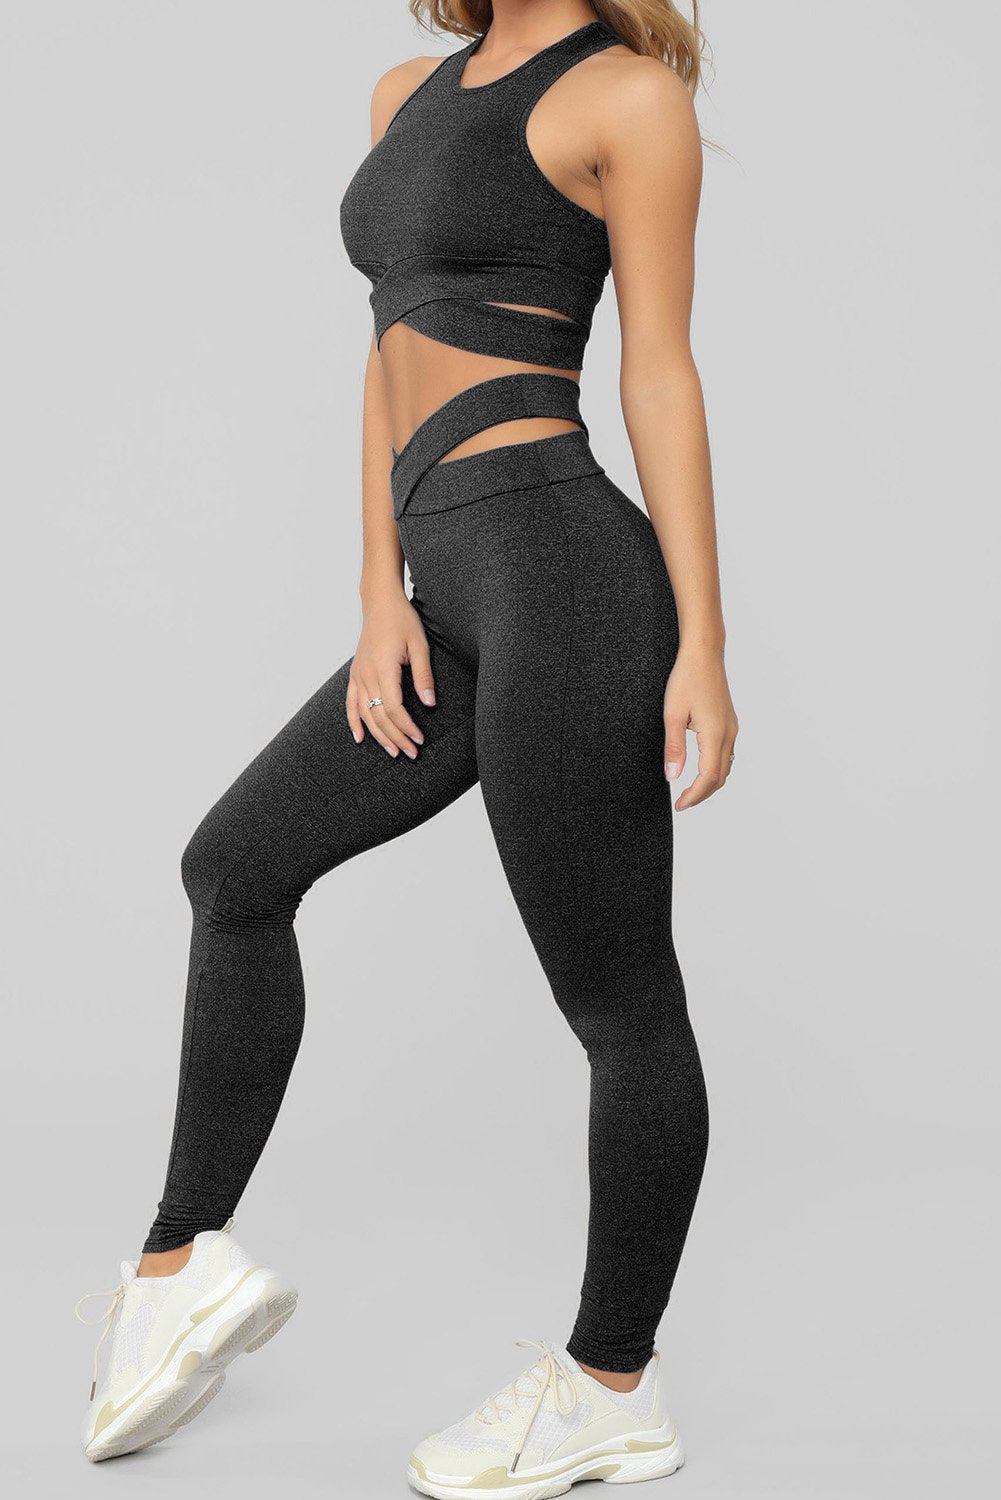 MODERNE ACTIVE 2 pièces leggings fitness femme pantalon de gym yoga et  soutien-gorge de sport ensemble S